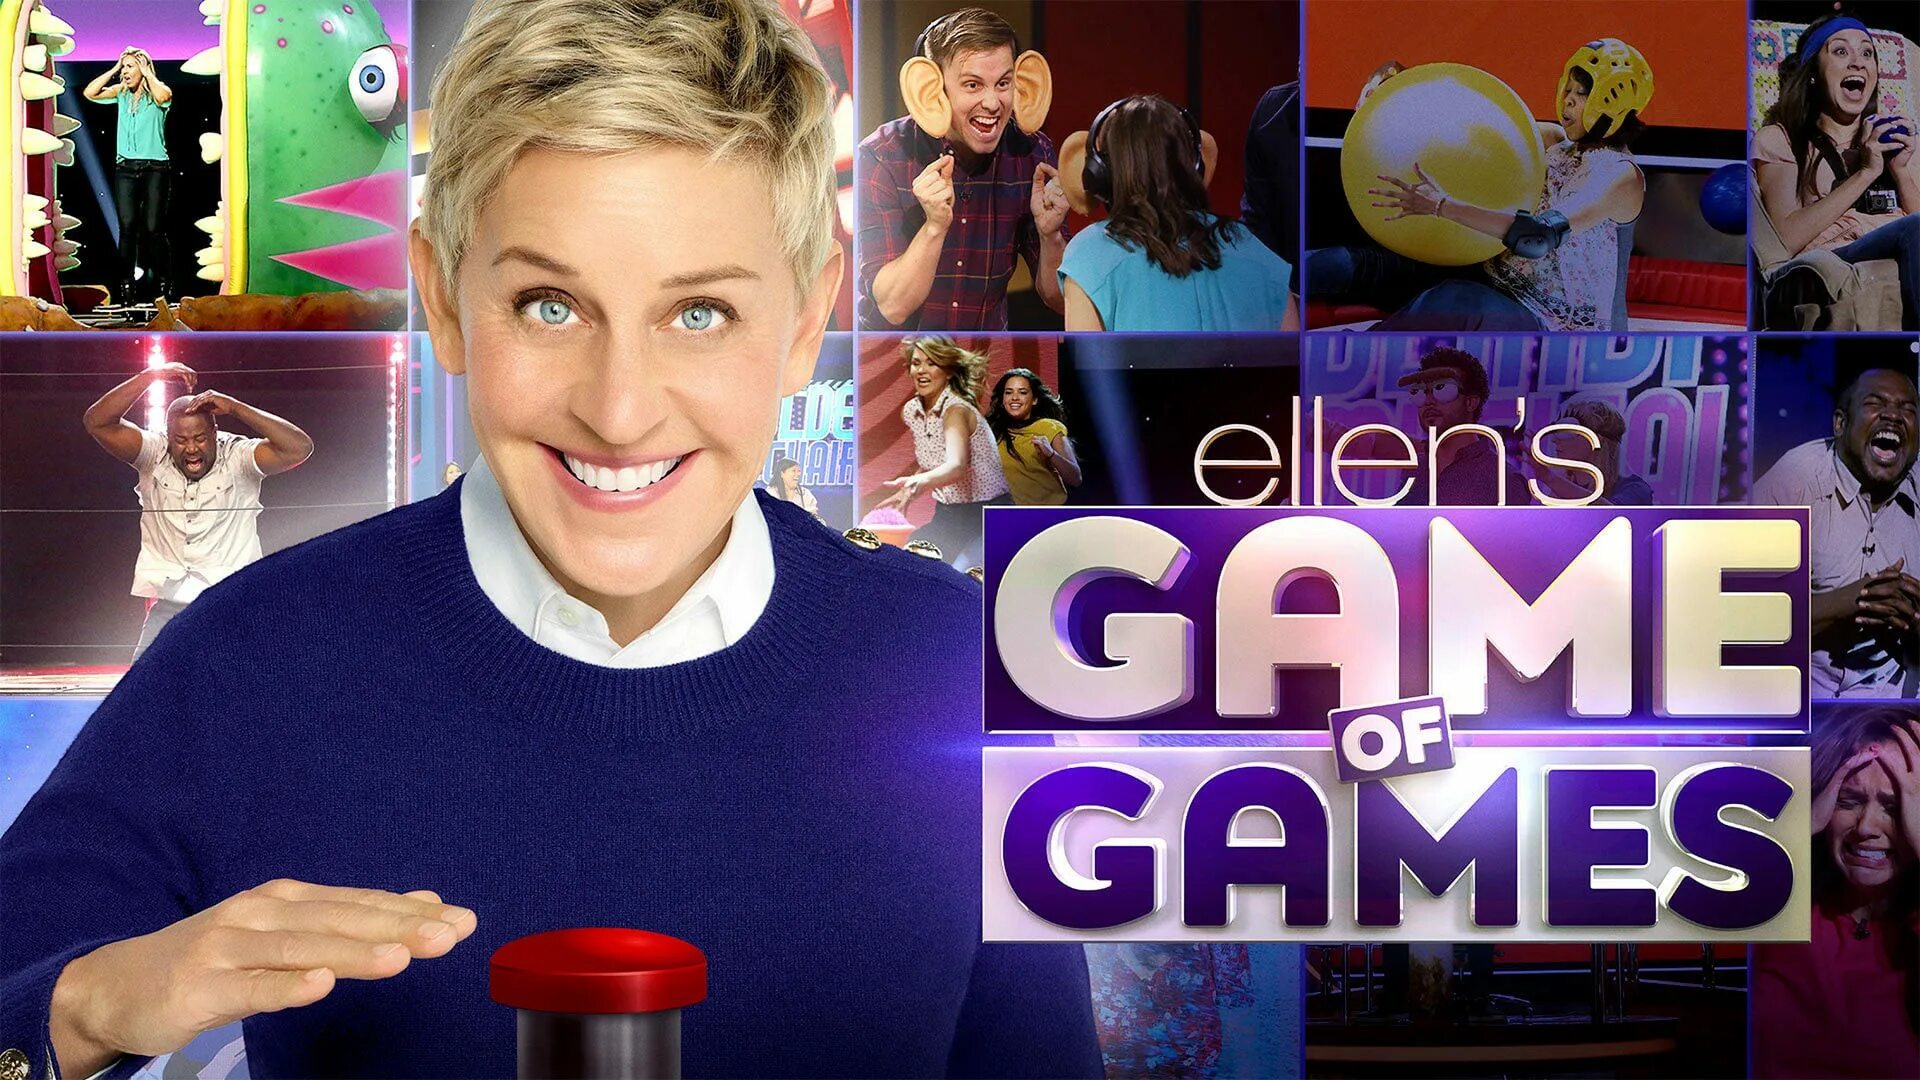 Game Ellen. Элен плей геймс. Ellen show game. Эллен шоу игры со звездами.